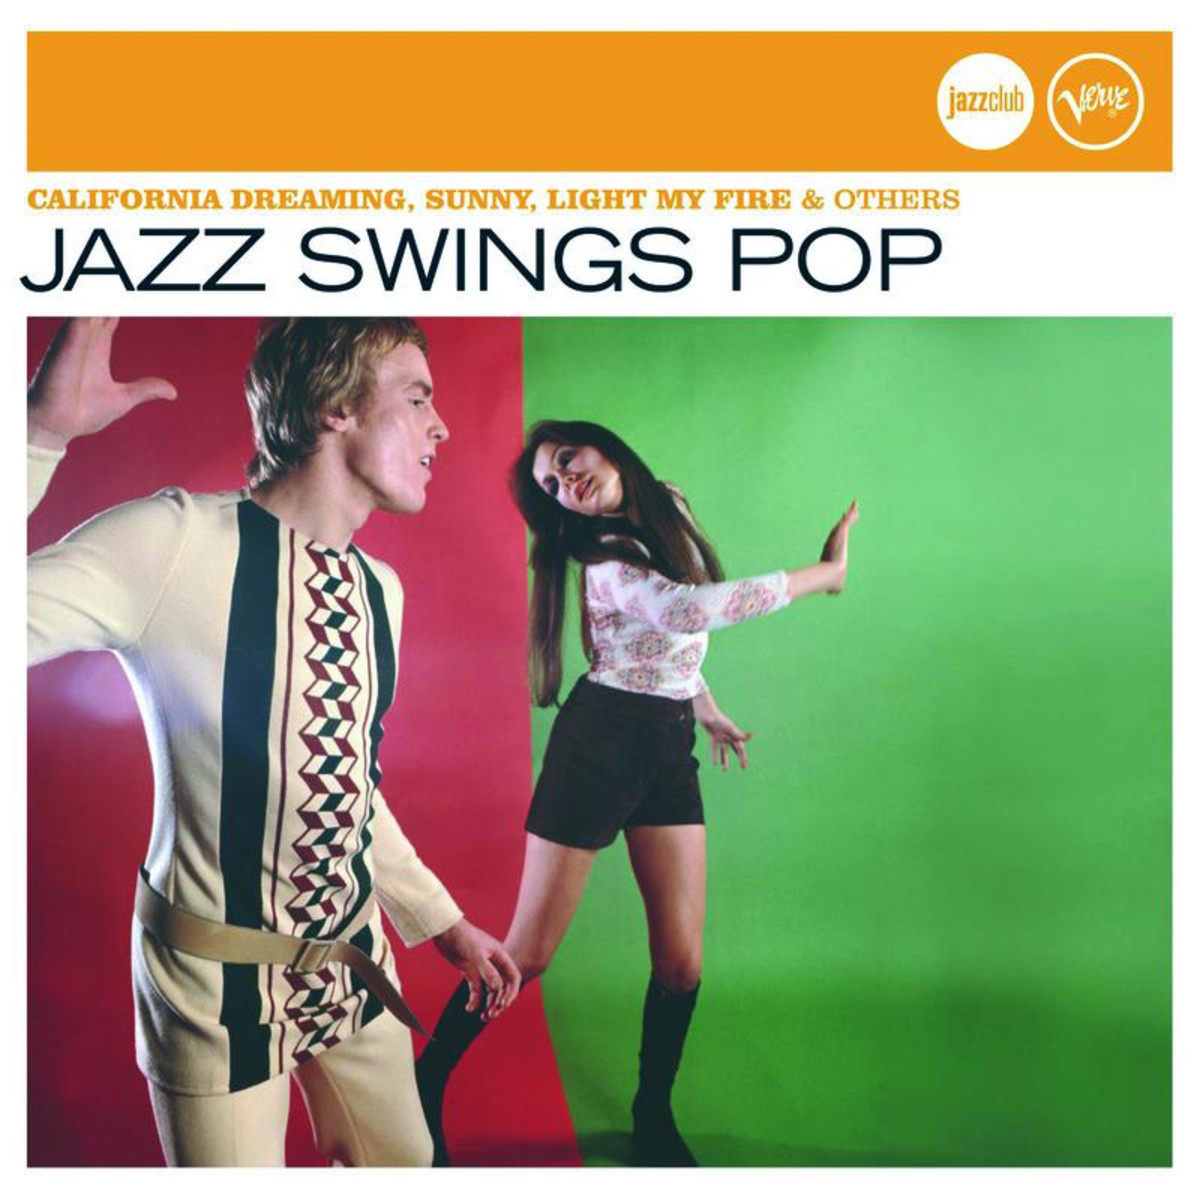 Jazz Swings Pop